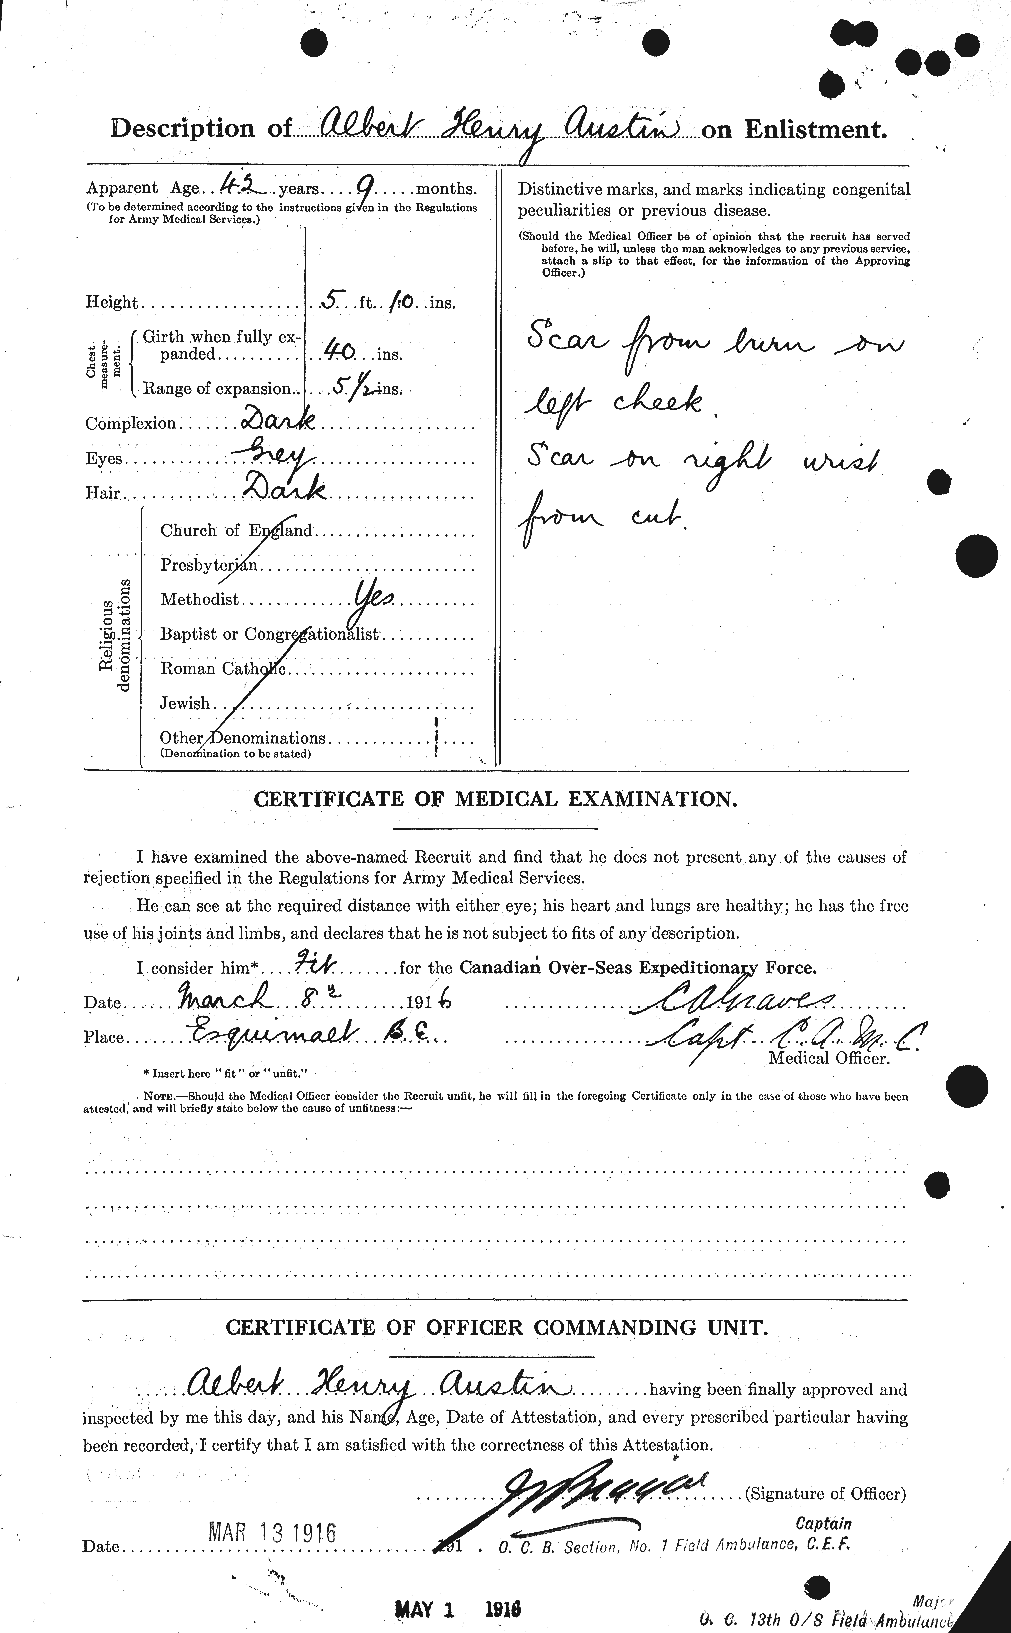 Dossiers du Personnel de la Première Guerre mondiale - CEC 215474b